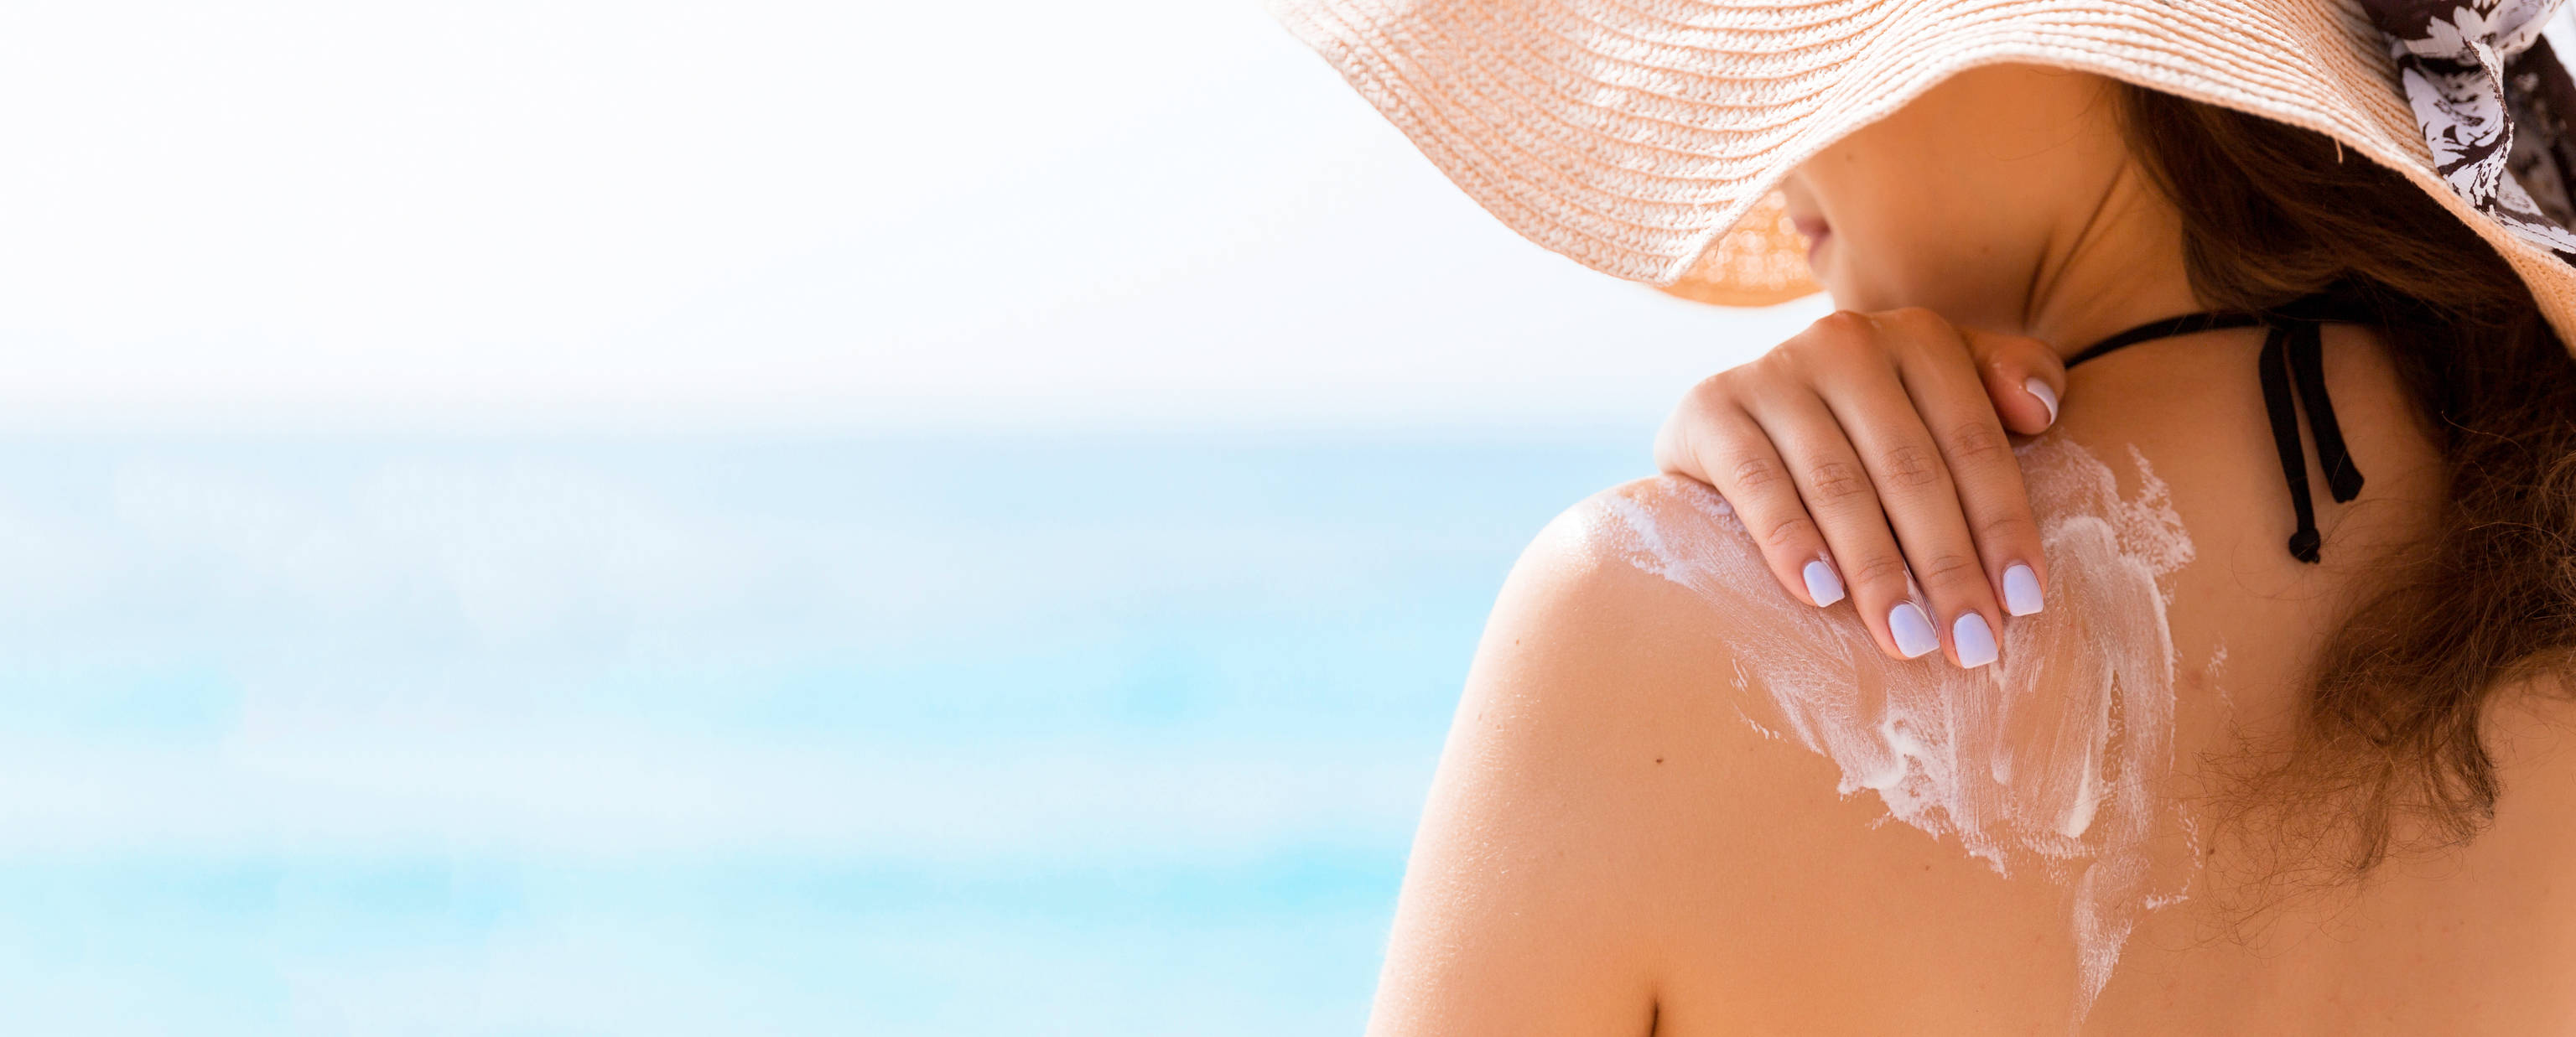 Los dermatlogos insisten en que deberamos proteger nuestra piel con un SPF 50 todo el ao, y no solo en verano.